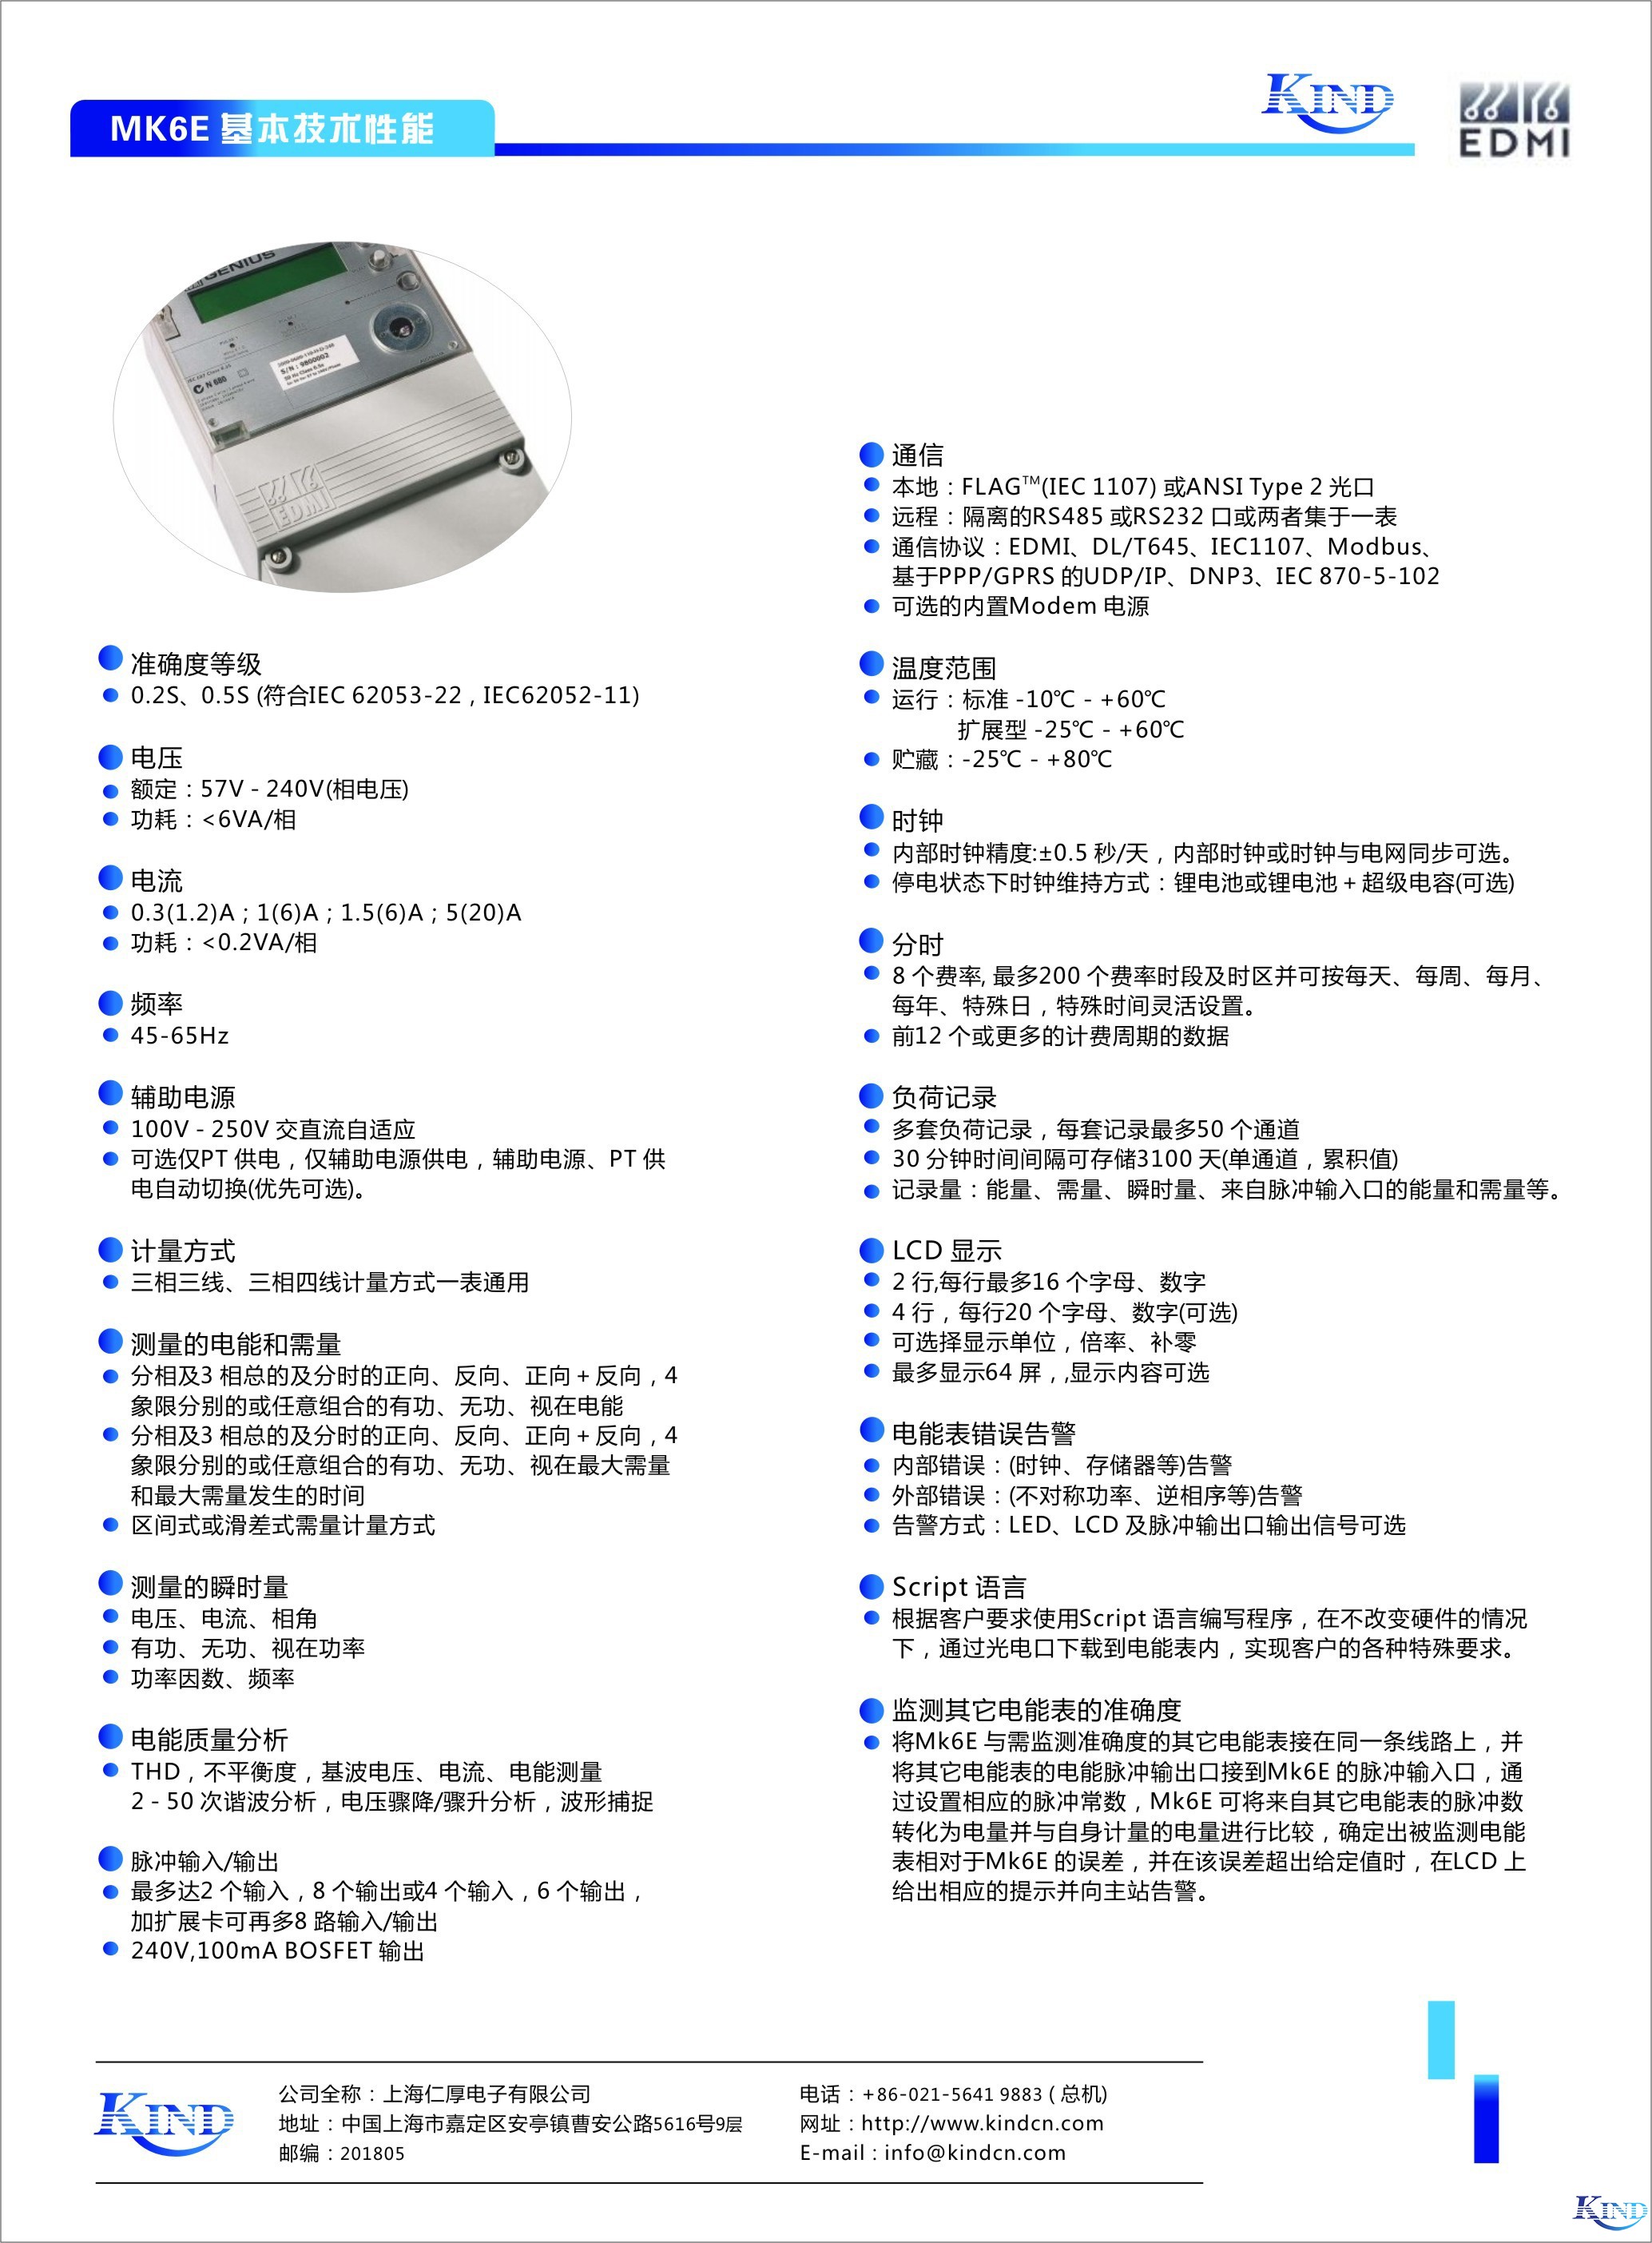 上海仁厚电子有限公司  Shanghai Kind Electronics Co., Ltd.